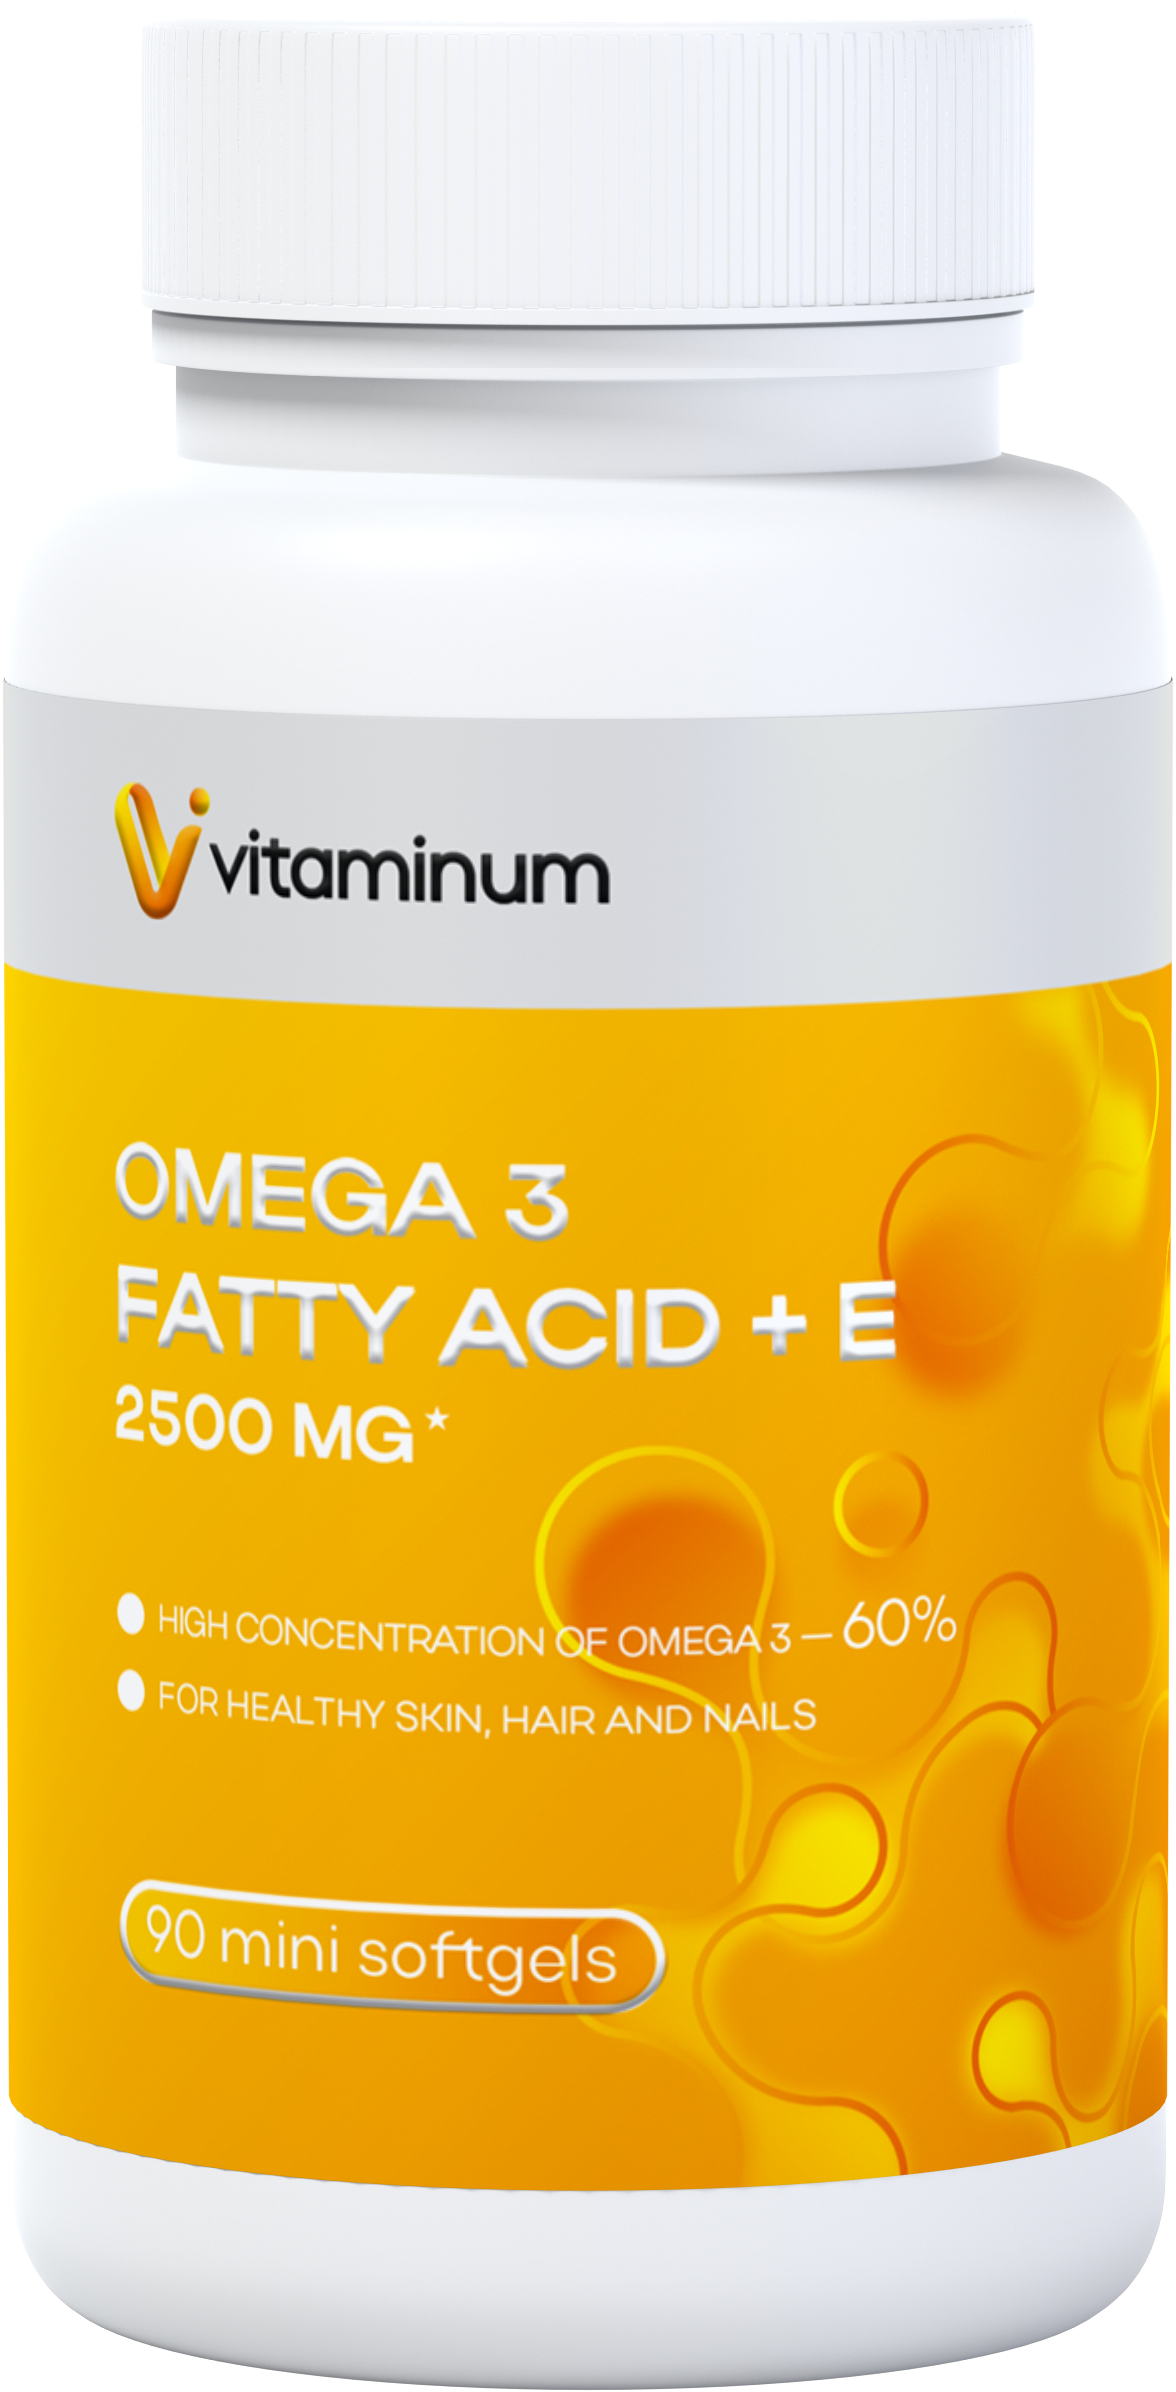  Vitaminum ОМЕГА 3 60% + витамин Е (2500 MG*) 90 капсул 700 мг   в Брянске